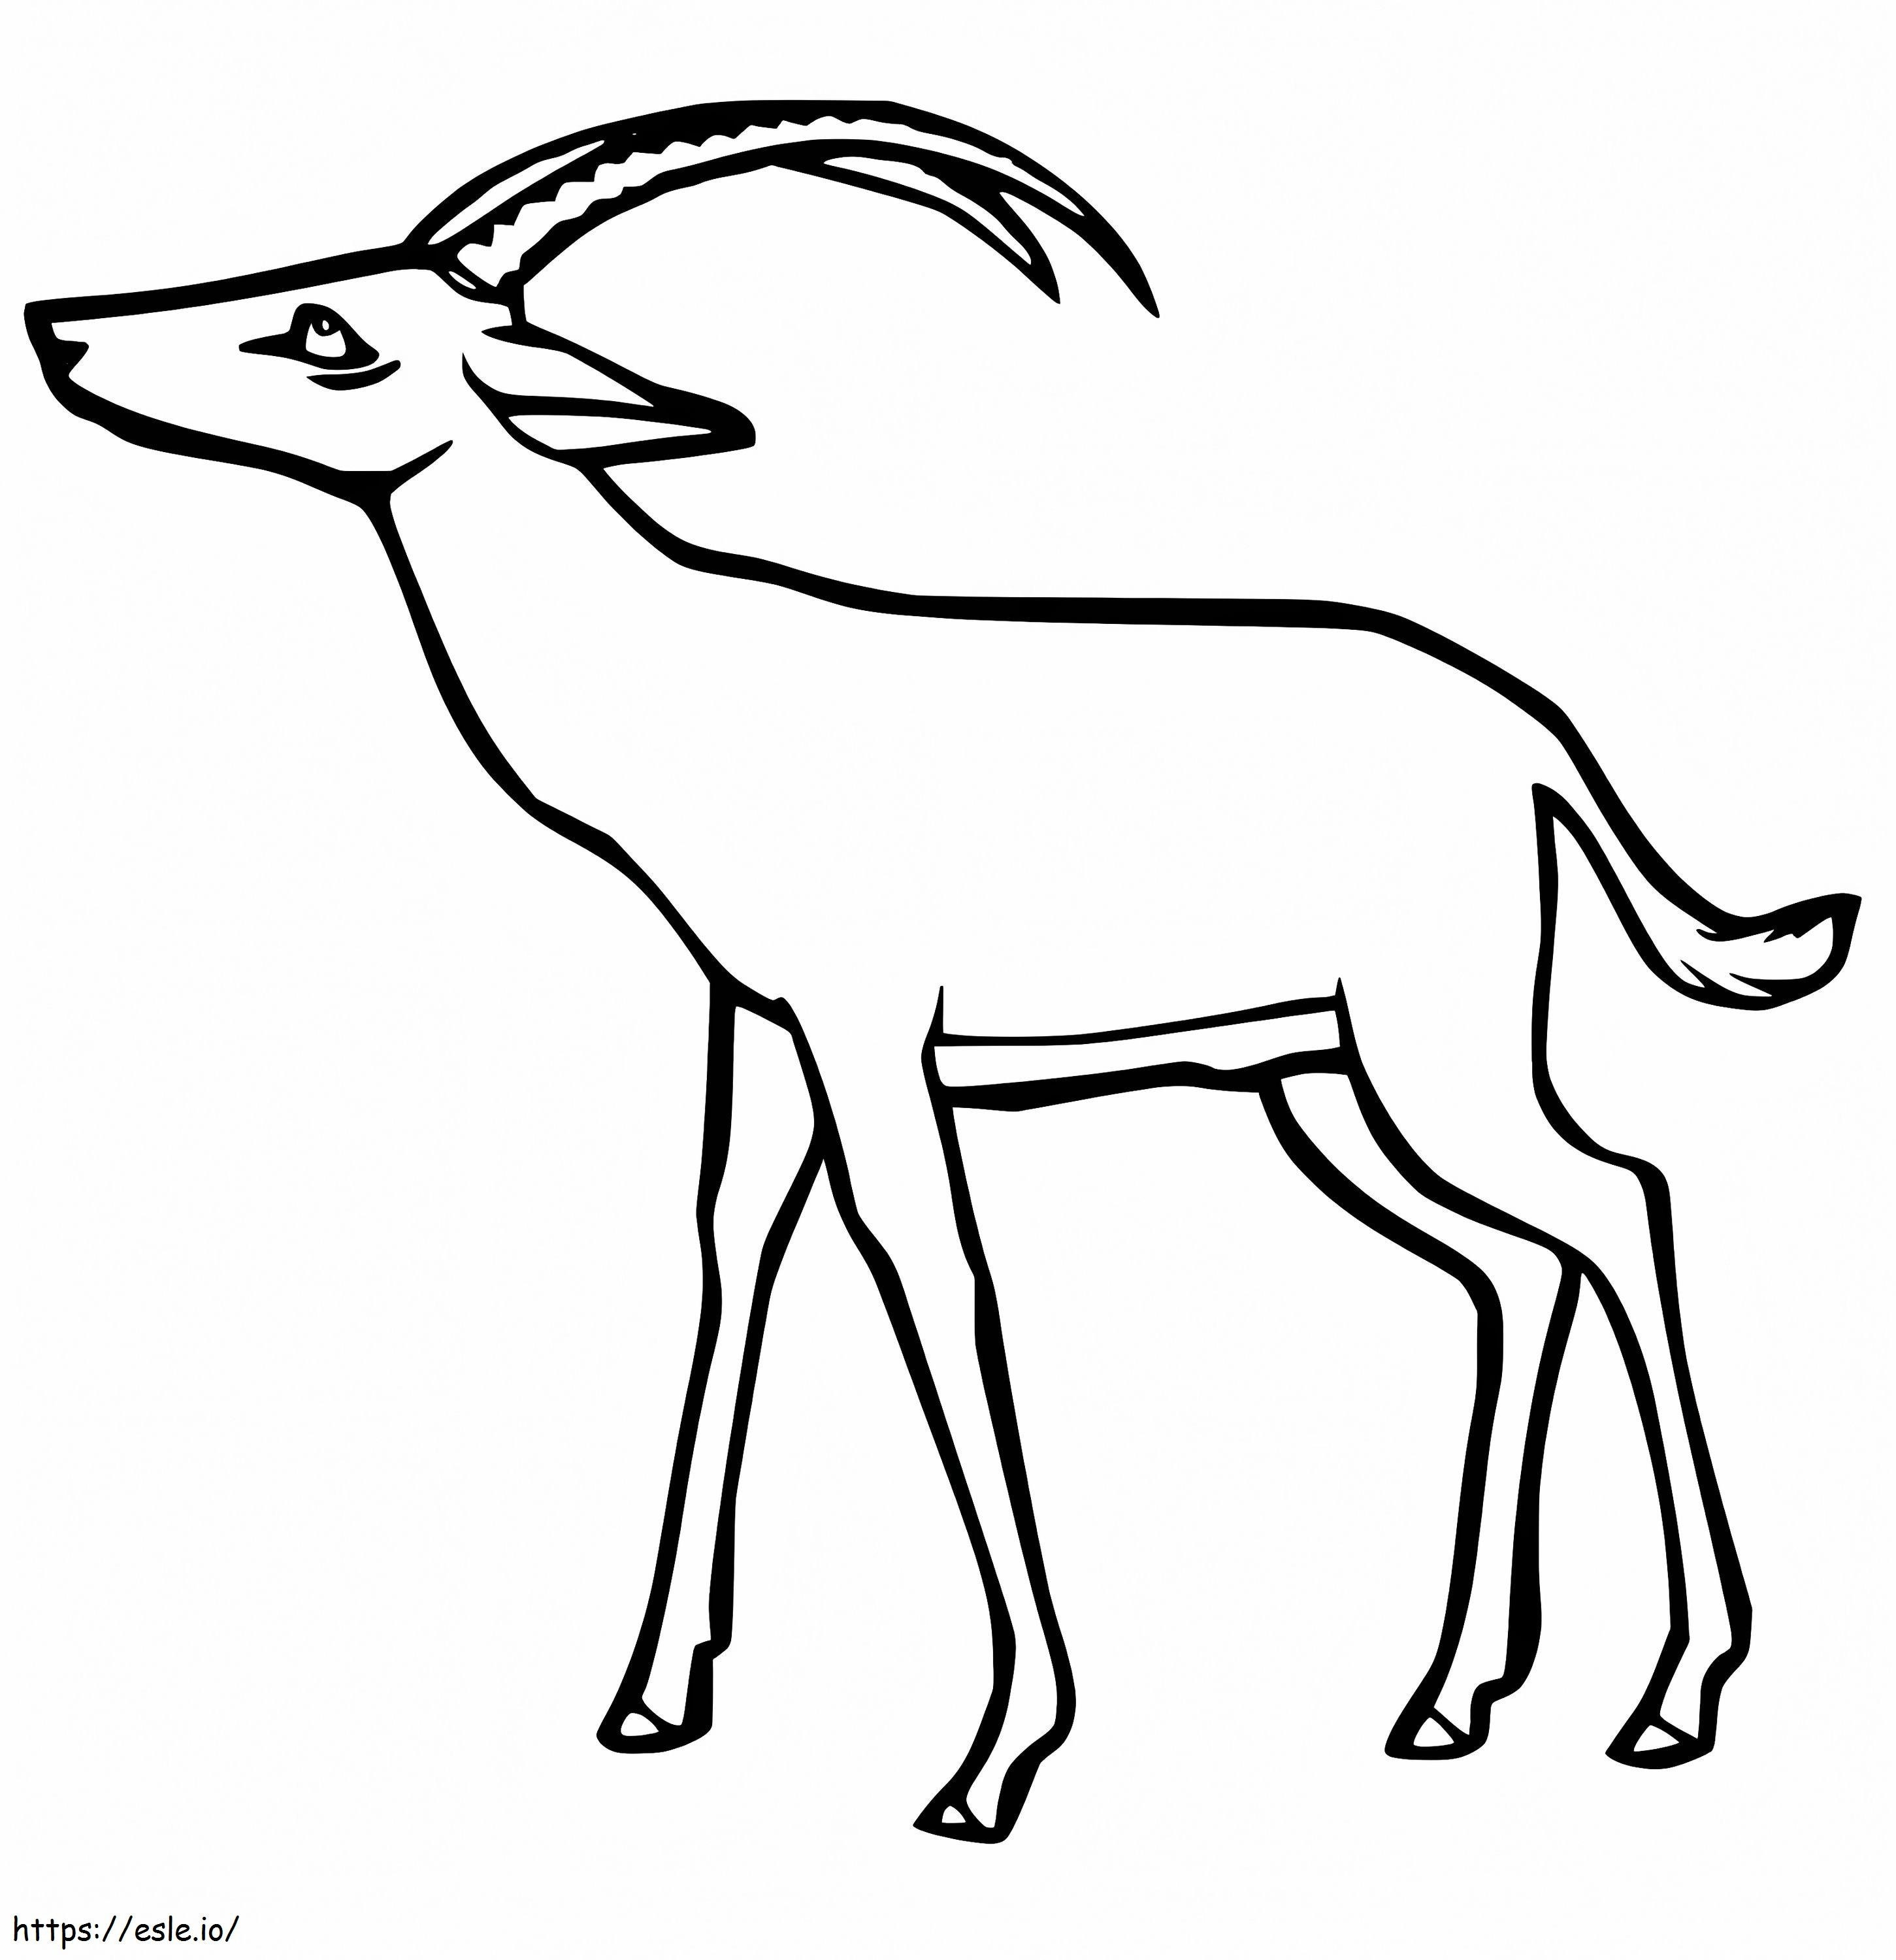 Coloriage Gazelle 2 à imprimer dessin